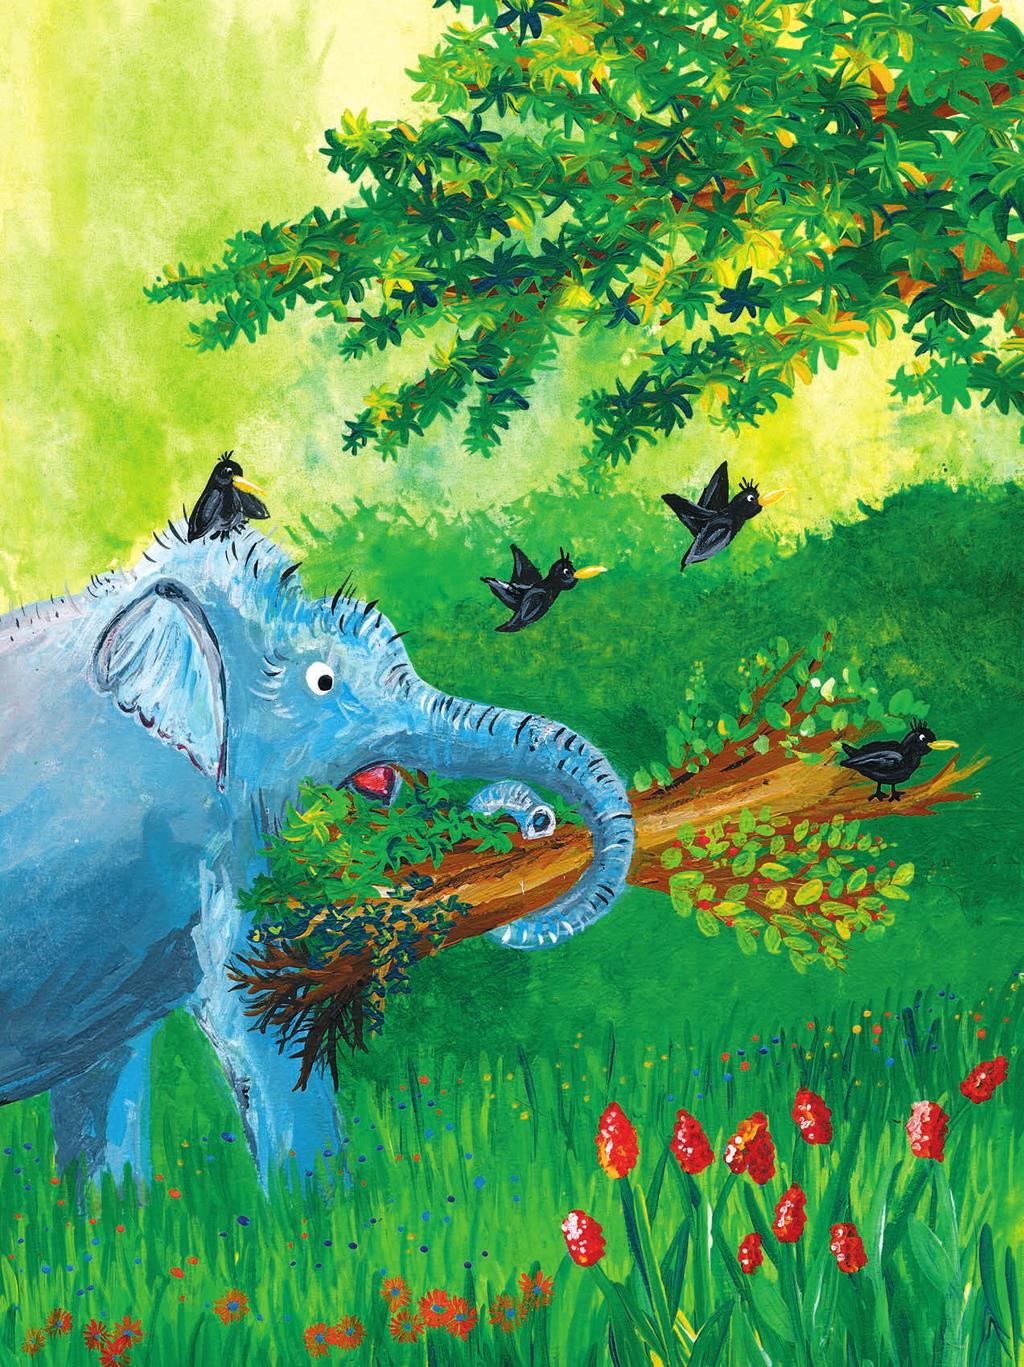 Mit den schweren und grossen Baumstämmen ist Louis überfordert, darum schickt er die vier kleinen Raben zu Mili, dem jungen Elefanten. Mili ist ein starker Elefant.